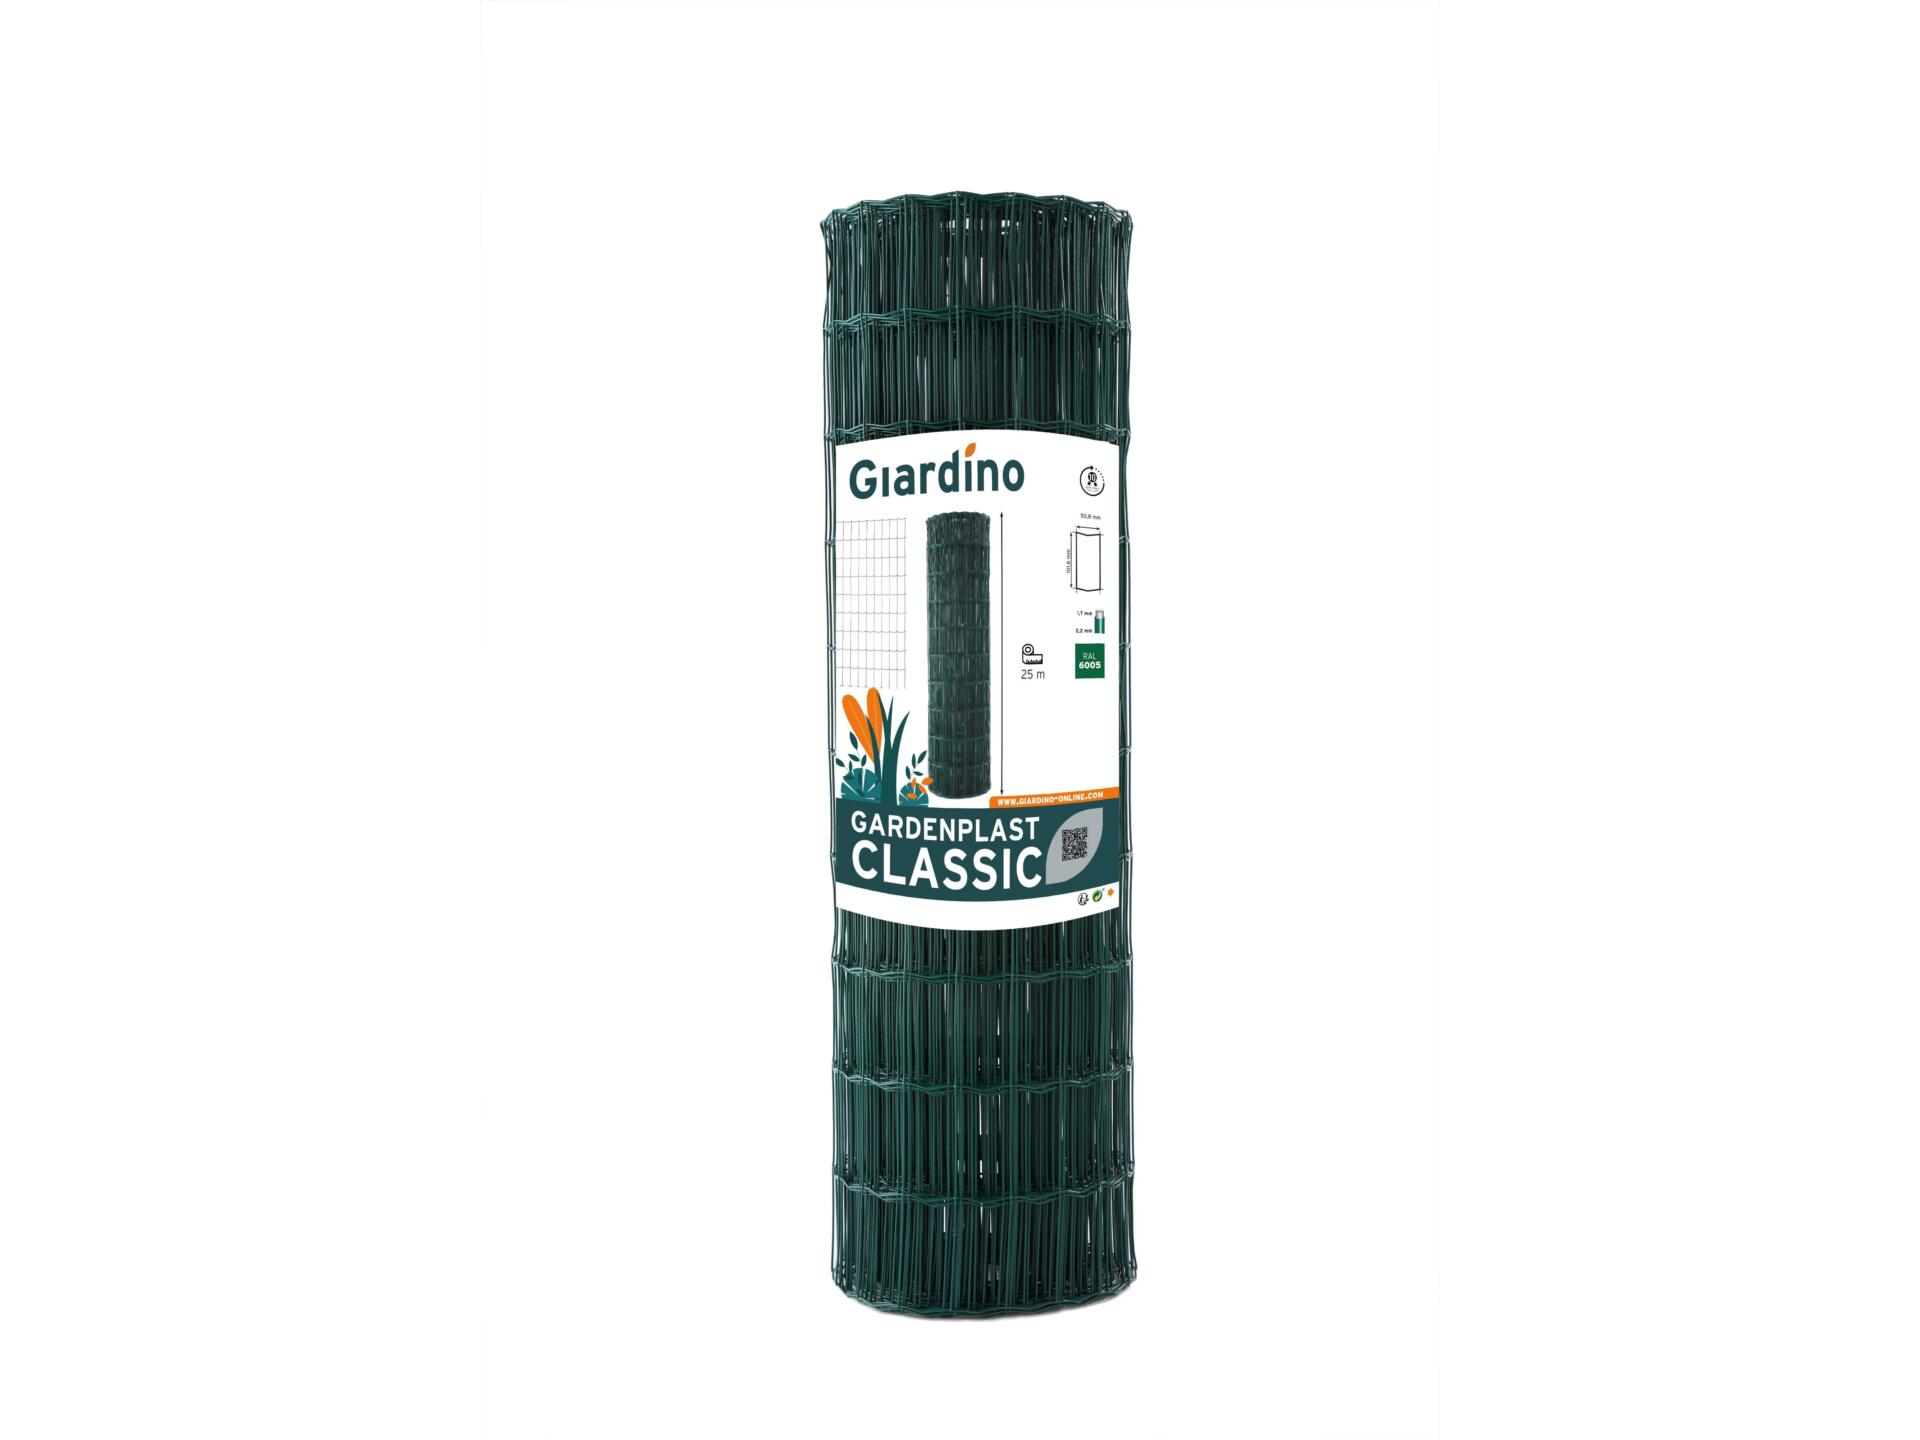 Giardino Gardenplast Classic grillage de jardin 10m x 102cm vert